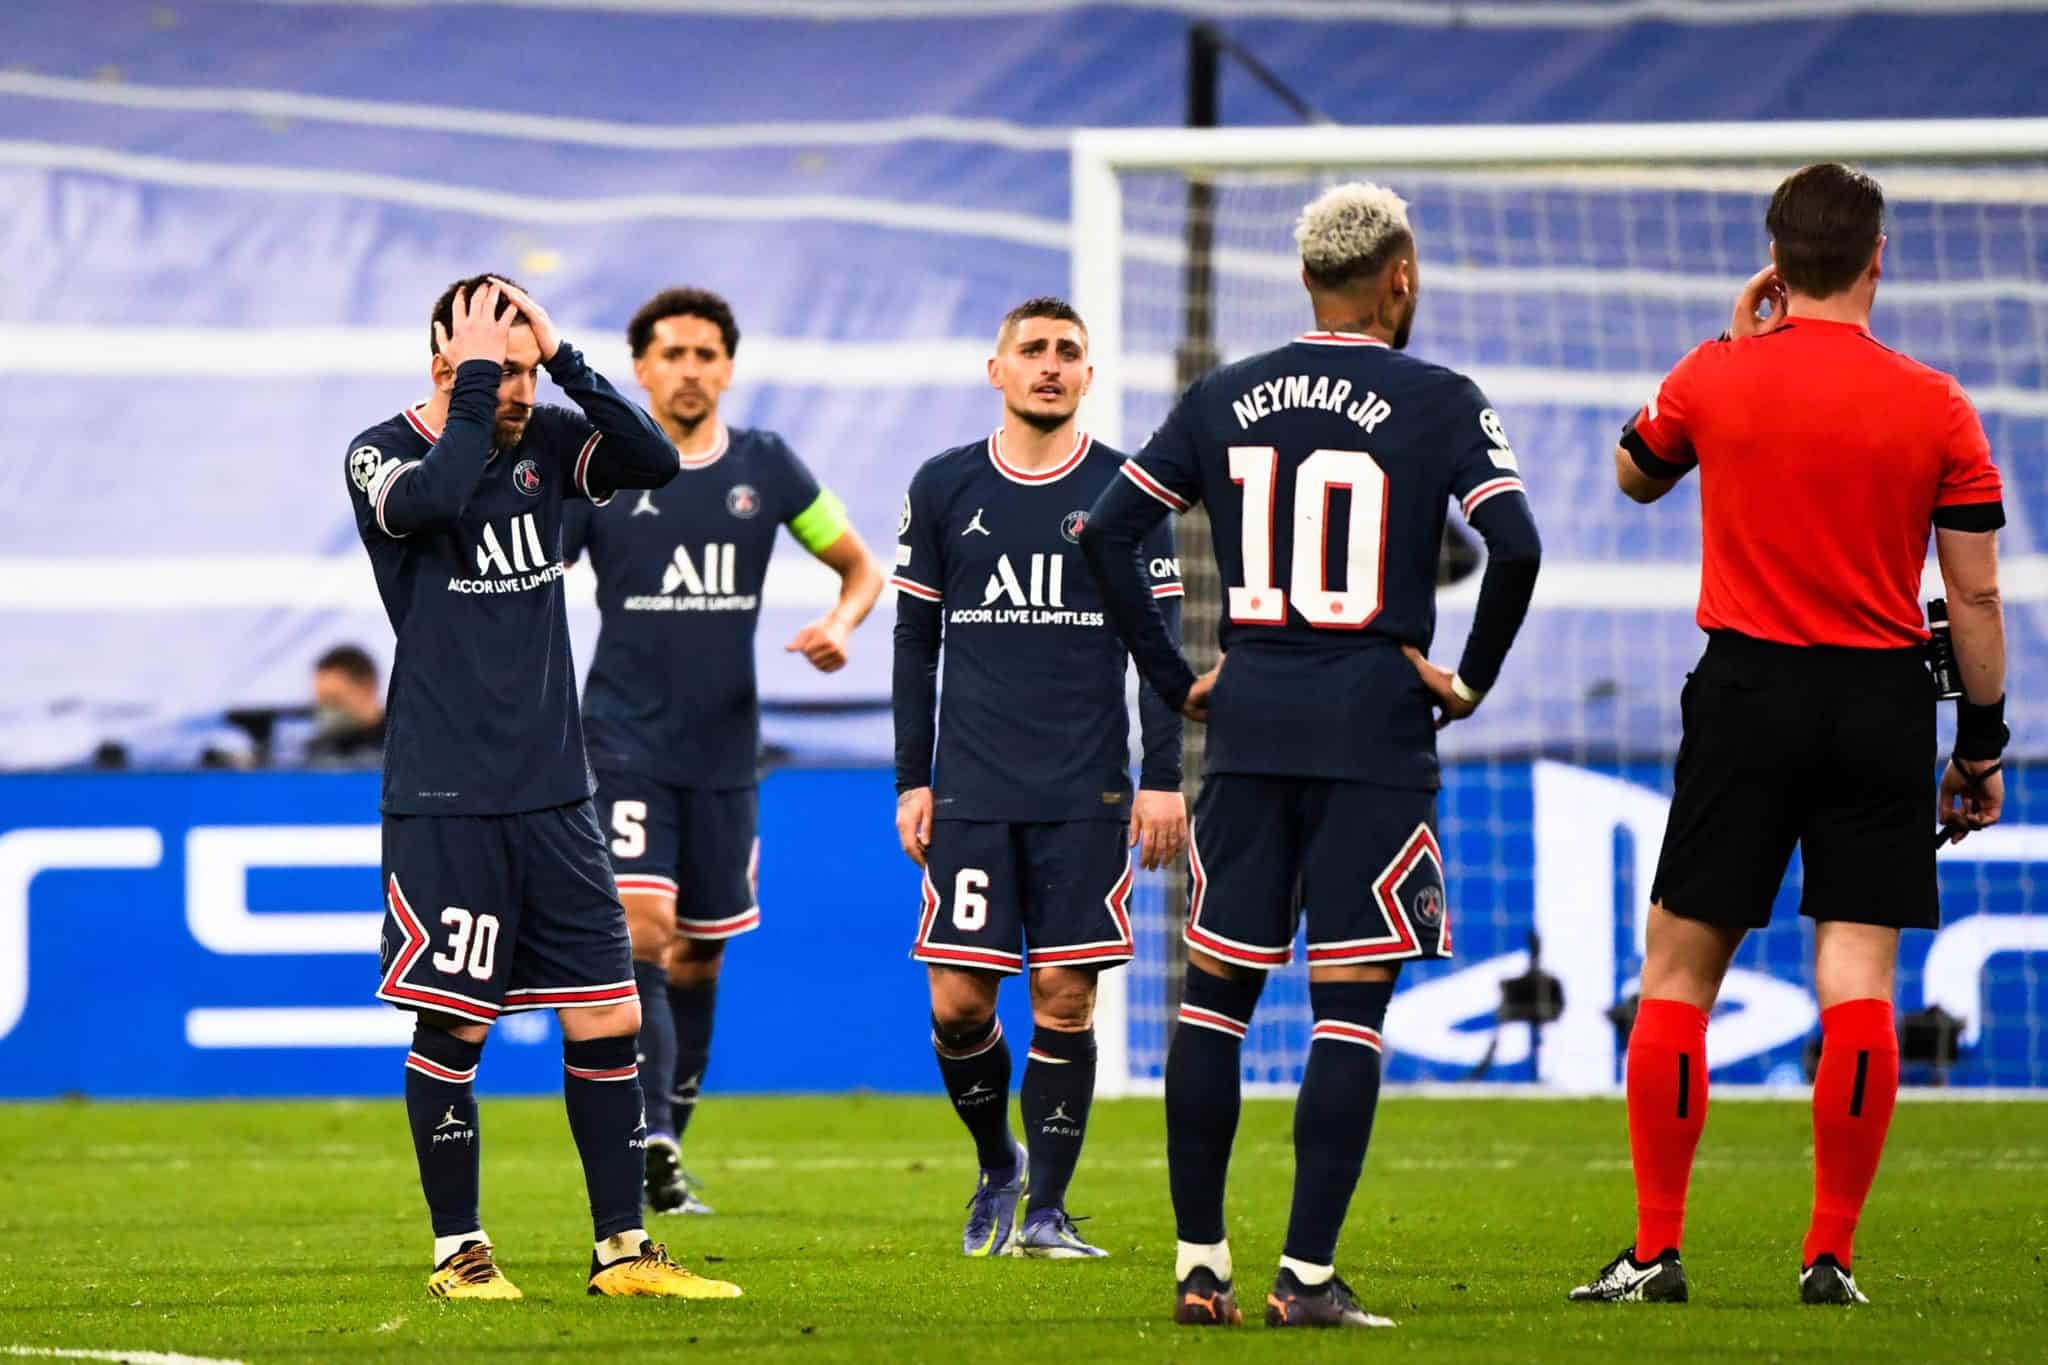 « Le talent seul ne suffit pas », Matuidi révèle ce qui manque au PSG pour remporter sa première Ligue des champions